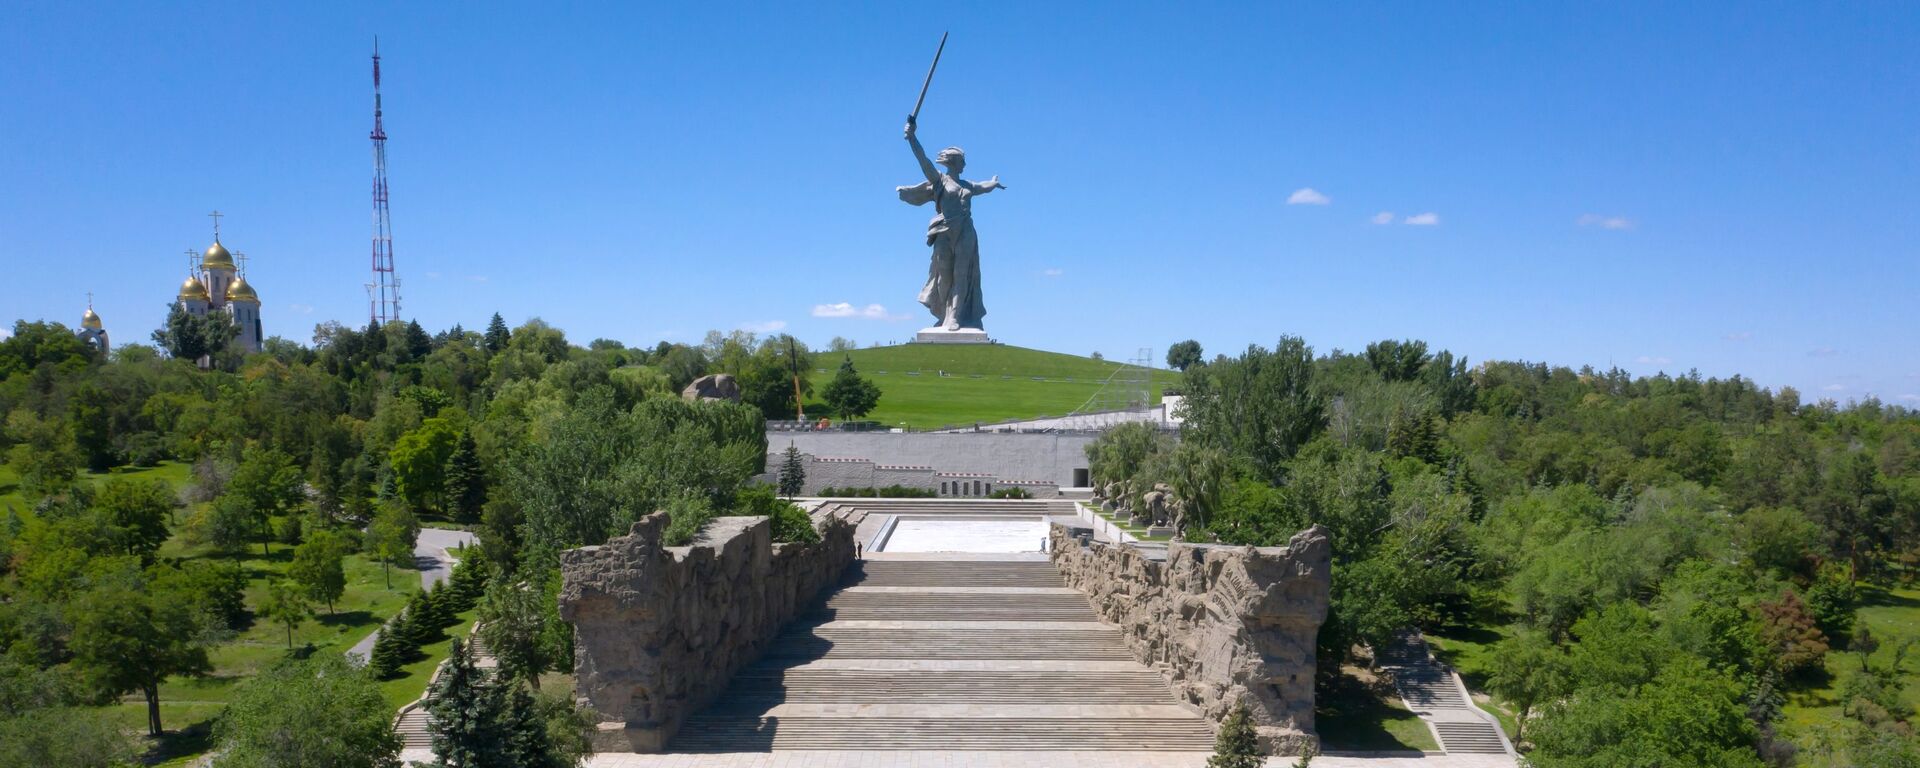 Монумент Родина-мать зовет! на Мамаевом кургане в Волгограде после реставрации - Sputnik Латвия, 1920, 05.05.2021